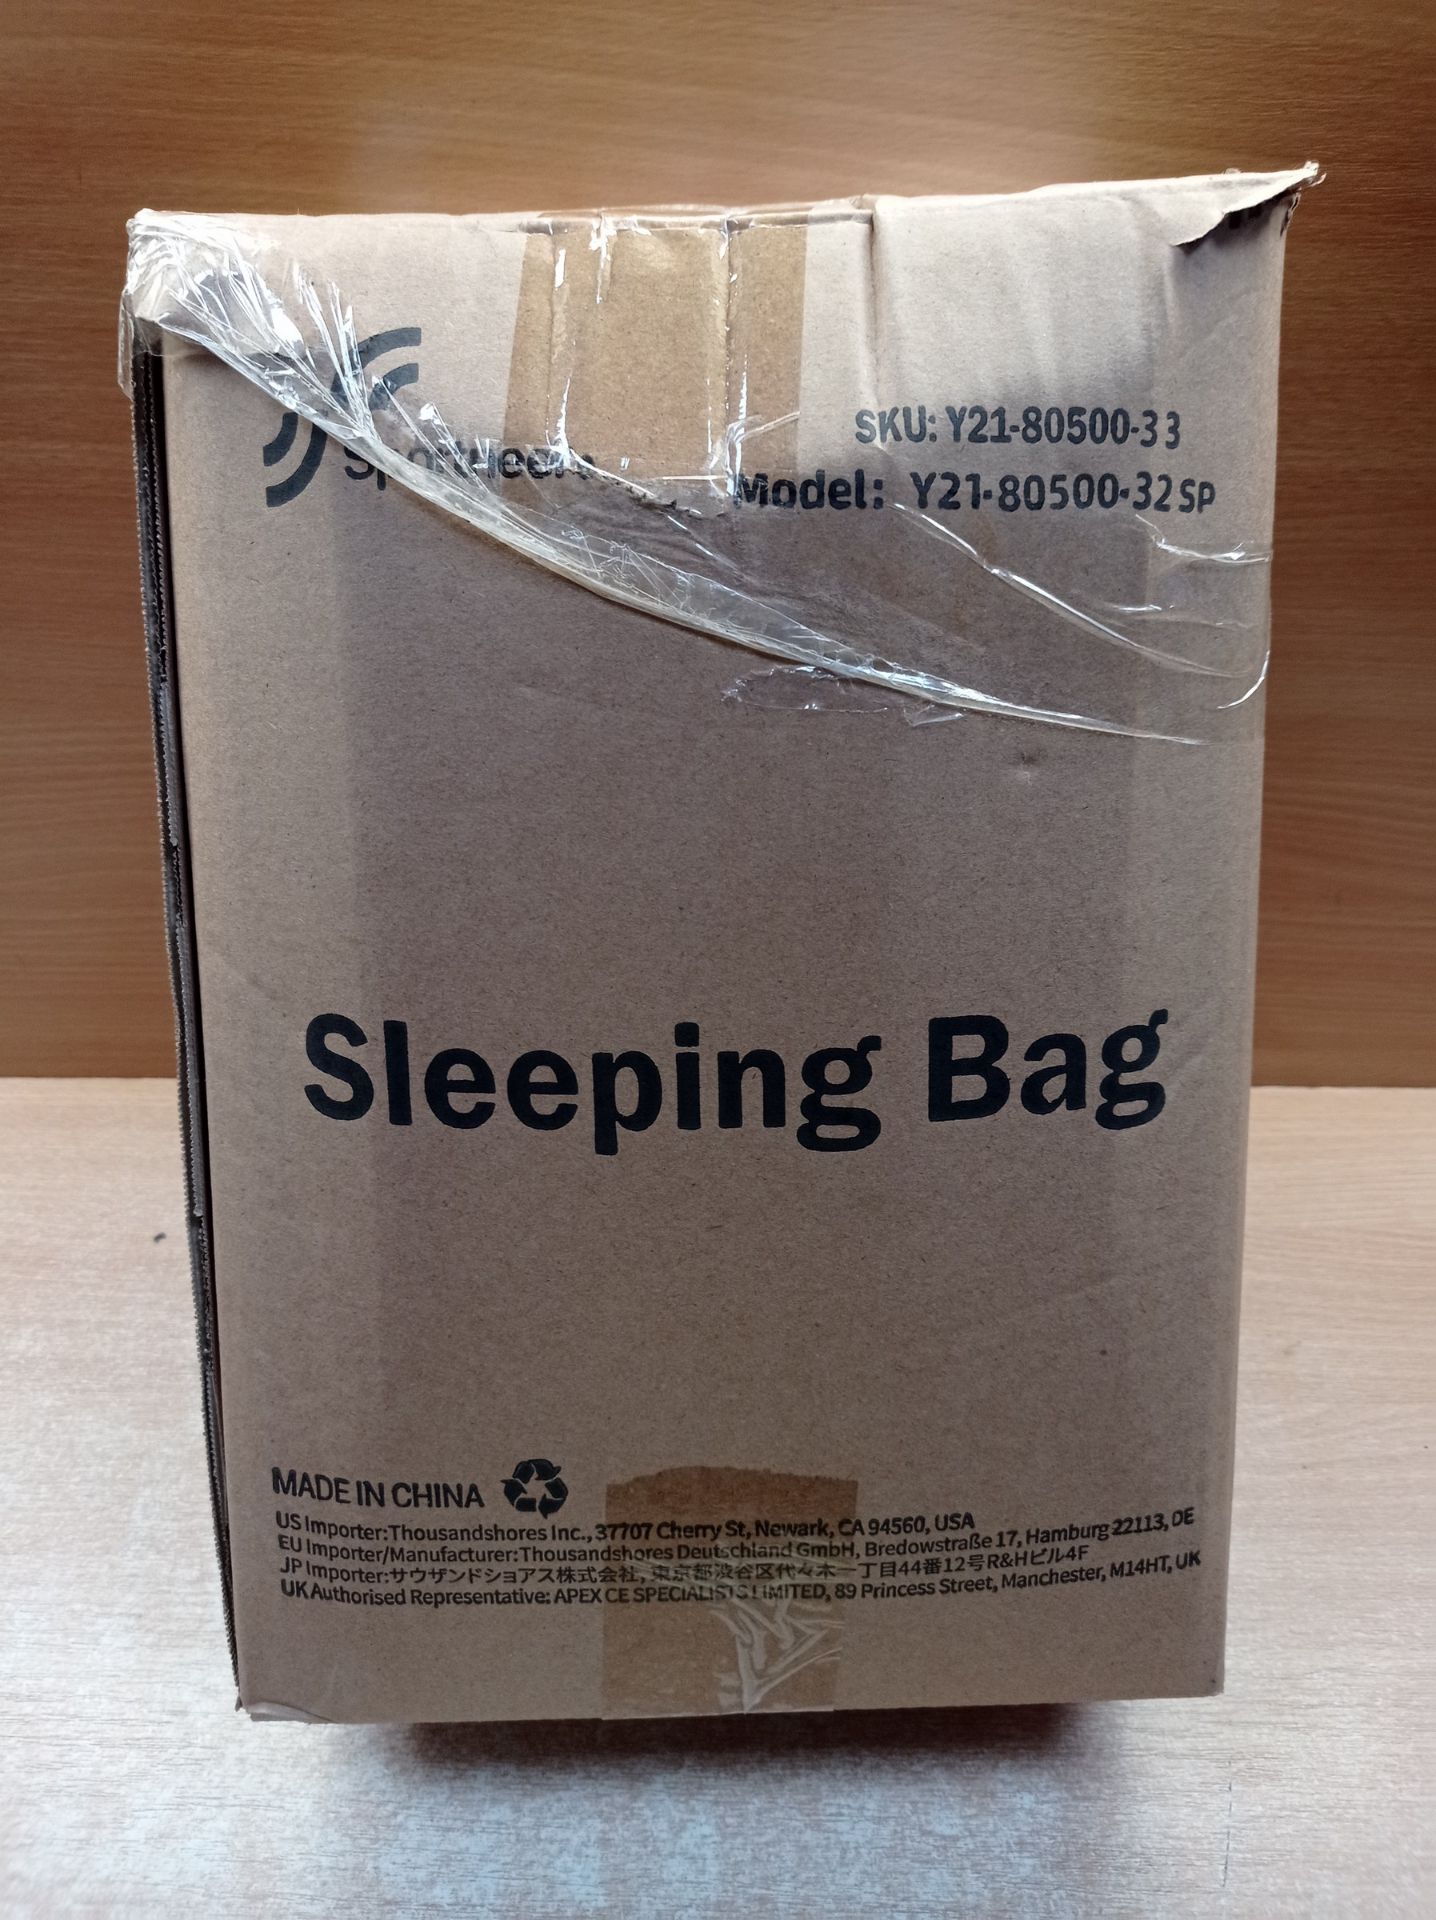 RRP £30.81 Sleeping Bag Camping Sleep Bags: Sportneer Warm Sleeping - Image 2 of 2